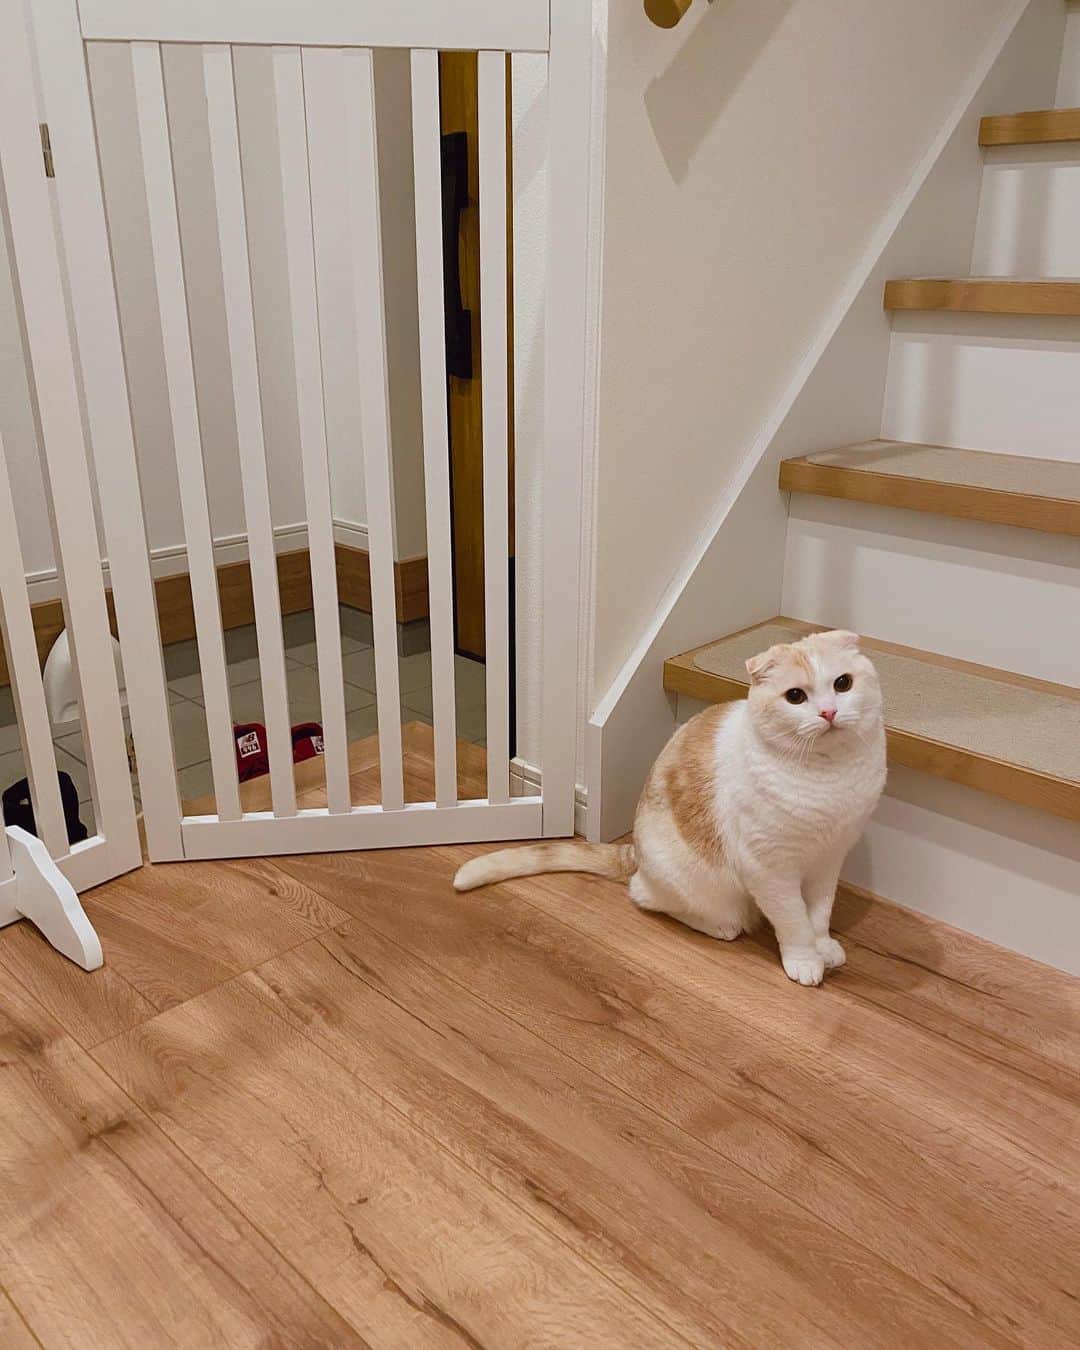 はなぼくろきなこのインスタグラム：「玄関のセンサーライト💡 猫たちが通るたびにちゃんと反応するので、寝る時にピカッと光ると、きなかもなが来てくれた.ᐟ って嬉しくなっちゃいます𓈒 𓏸 𓐍  𓂃 𓈒𓏸   そしてきなはよくこの位置で「にゃー！」って呼んできて、2階に誘導しようとしてくる…(•ᴗ•)  かわよ🤍  #はなきな #猫部 #センサーライト  #脱走防止柵 高さ91cmなので、猫の脱走防止柵にしては低めの柵なのですが、(元々は犬用)設置して3ヶ月以上の間、きなももなも1度も飛び越えようとしないので、うちの子たちにはこれで充分でした🌼 高い柵に登って上の隙間から出たり飛び越えたりしてる子もいるので、猫ちゃんの性格や身体能力にもよるのだと思います。 もなは身体能力高いけど、性格的にビビりなので配達の人など知らない人がくる玄関には行こうと思わないのかも。 きなは玄関は怖くないけど、別に飛び越えたいとは思わないって感じだと思います🥺(飛び越えられる高さじゃないって思ってそう) 外出時は1番右のところを手前に引いて、ドアみたいに使ってます🚪)」